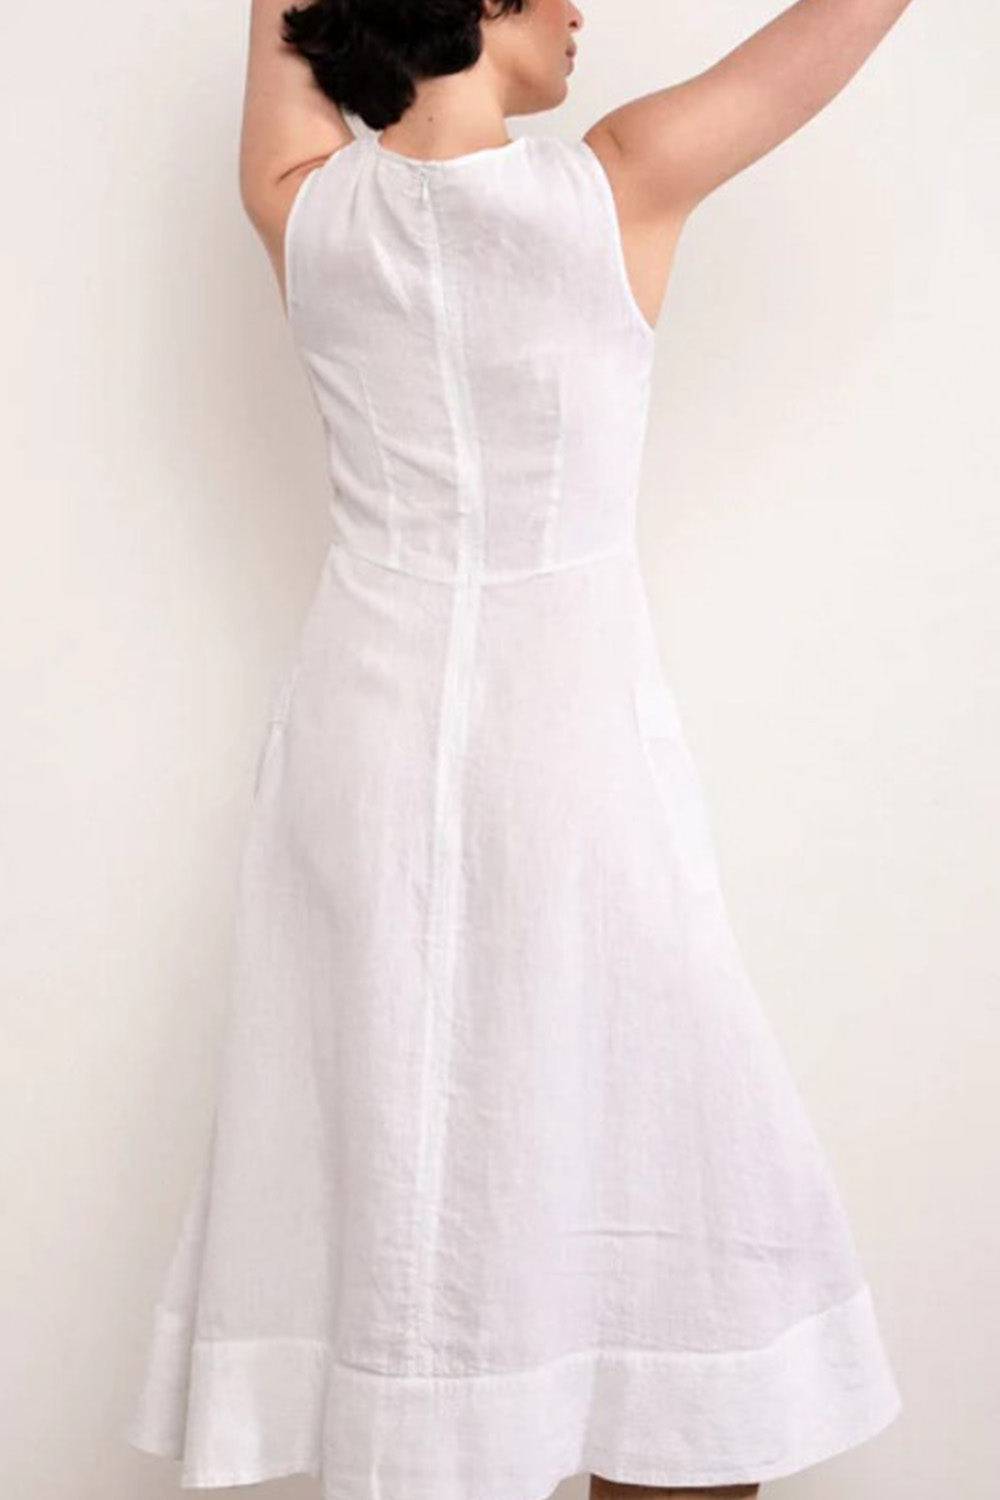 Glorious White Dress